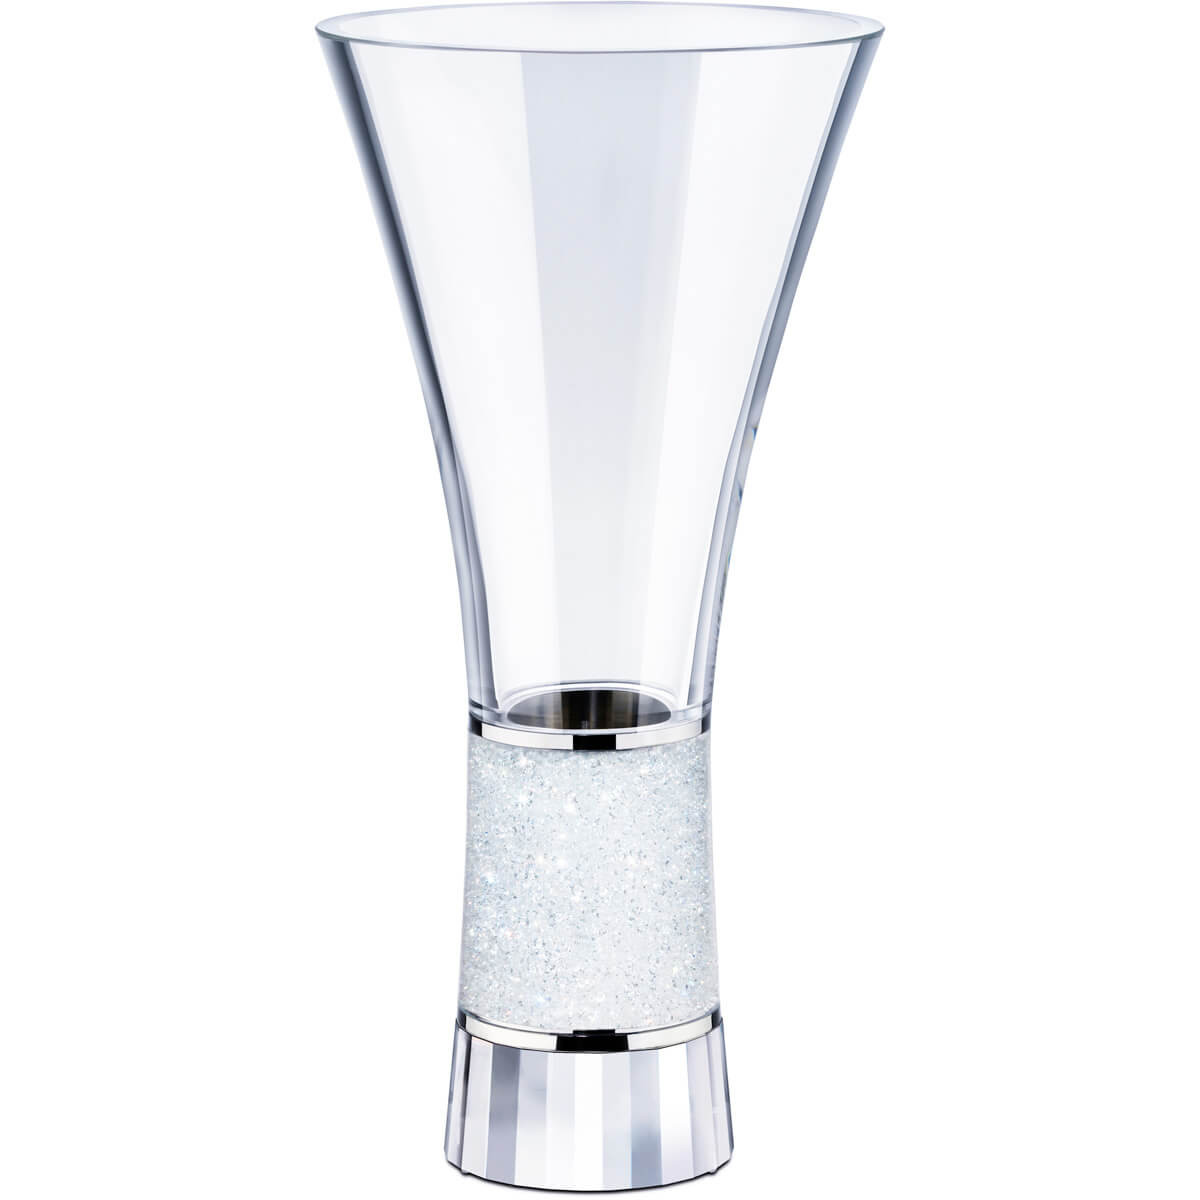 26 Popular Flat Round Glass Vase 2024 free download flat round glass vase of crystalline vase exclusively on swarovski com intended for crystalline vase